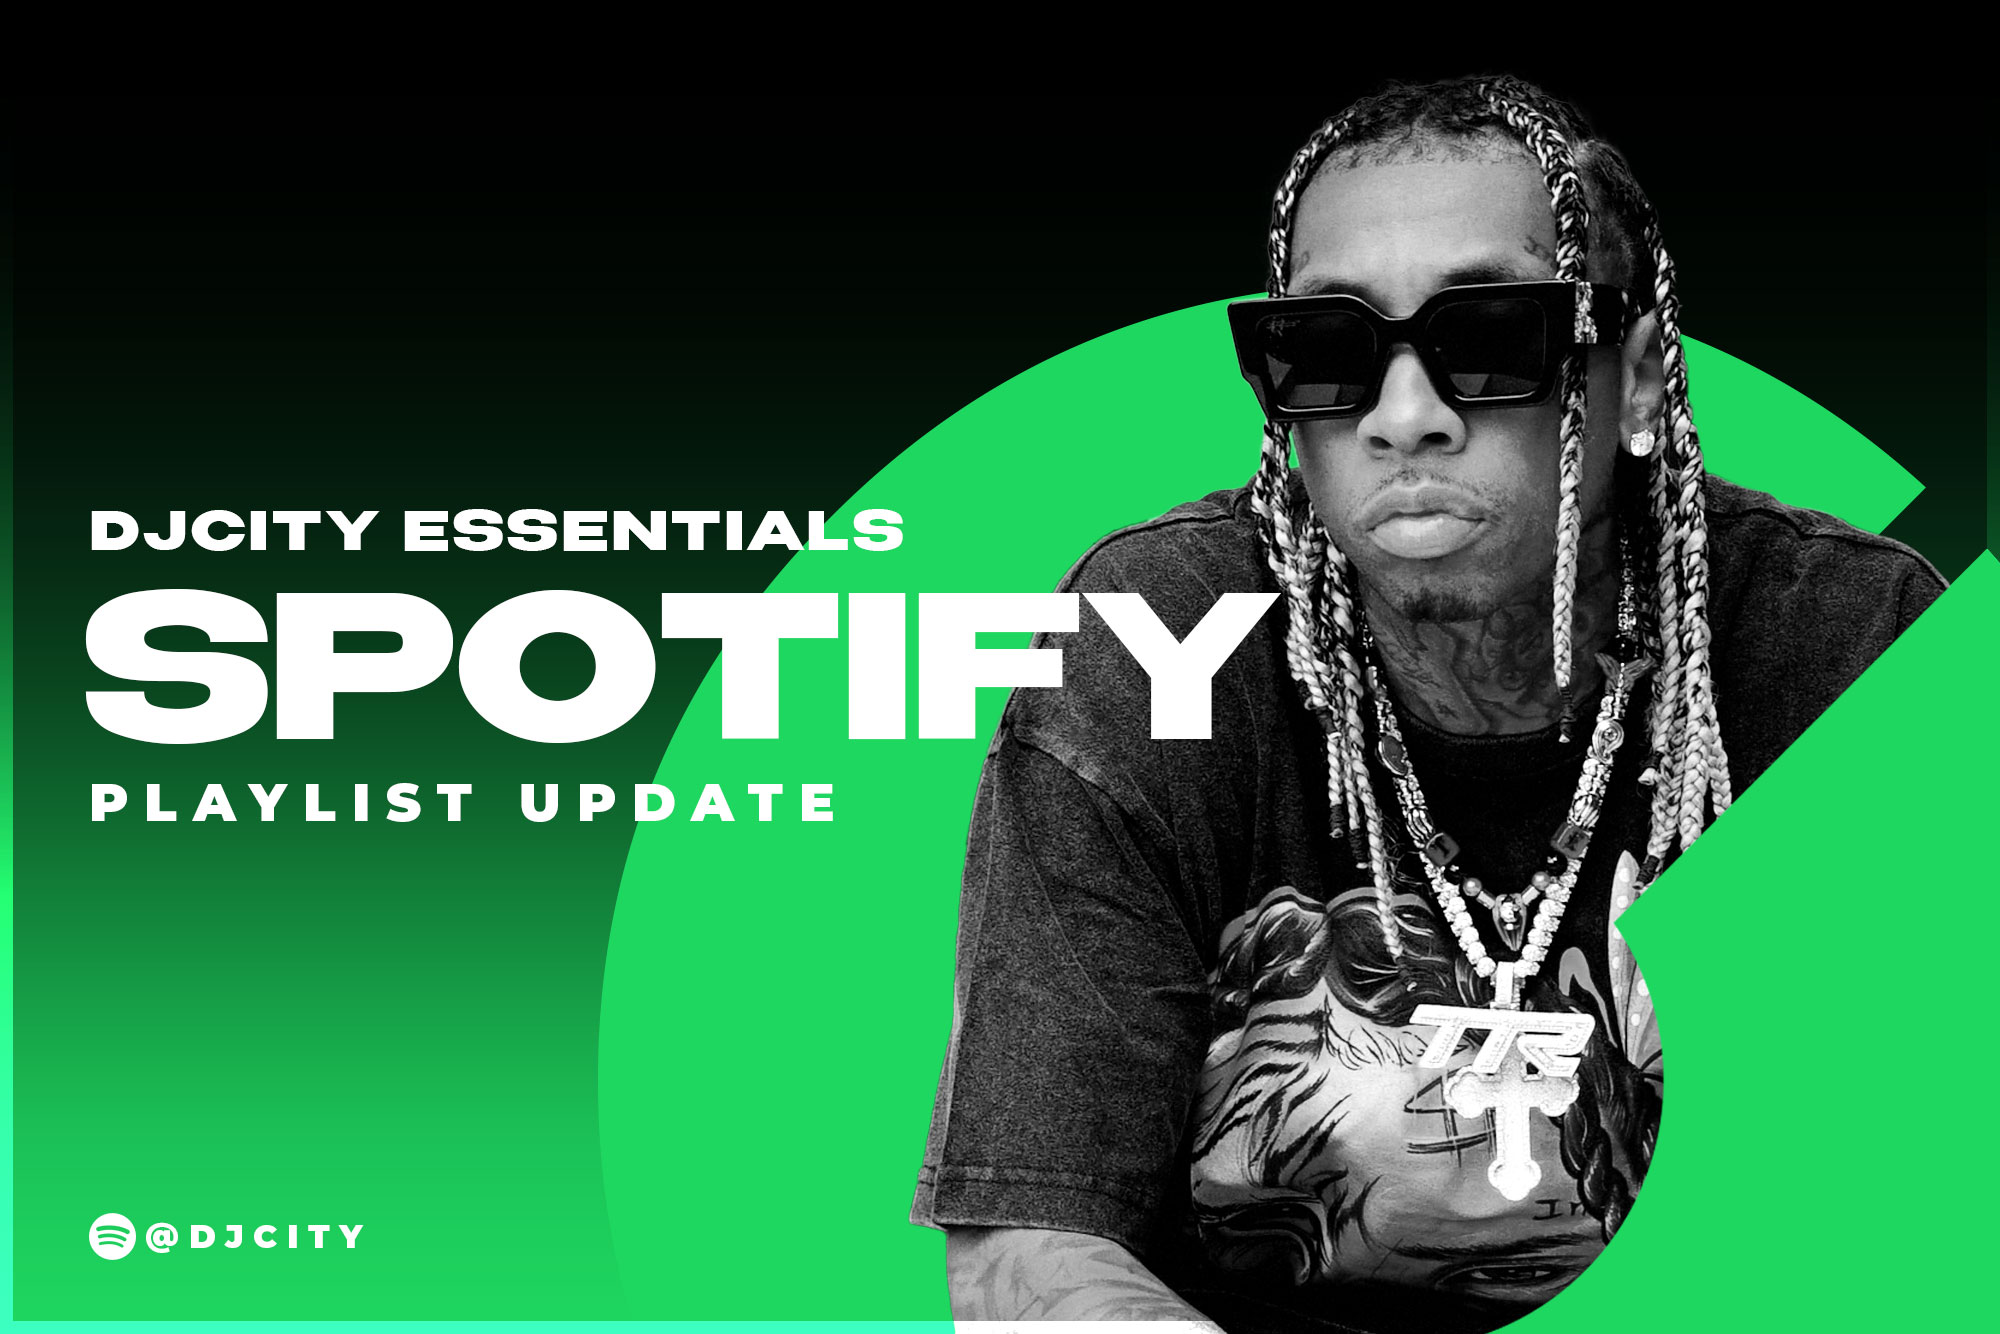 DJcity’s Spotify Playlist Update: Aug. 3